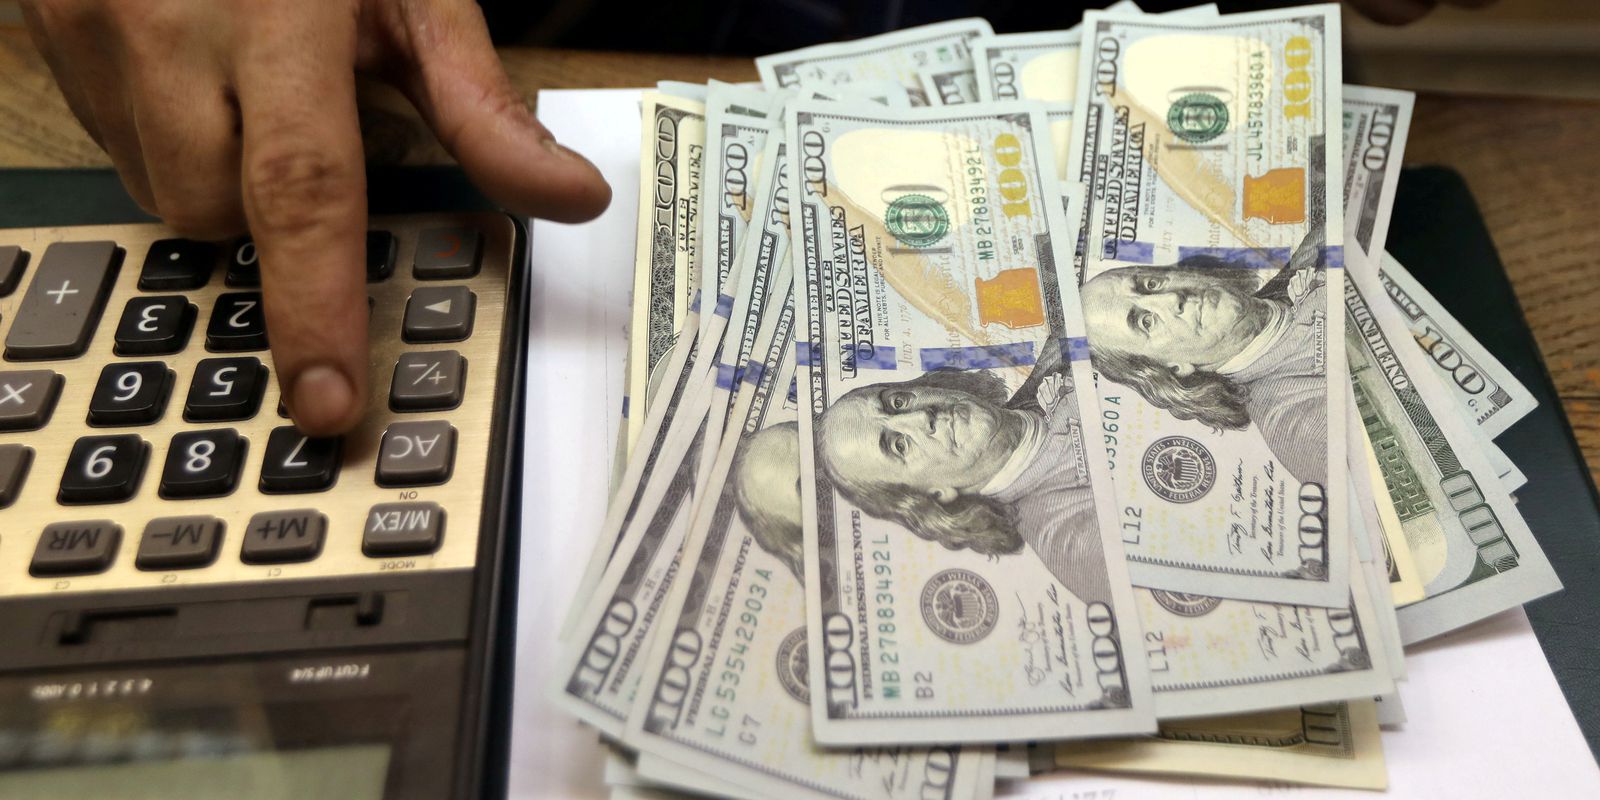 Dólar encosta em R$ 5,17 após fim do feriado de carnaval